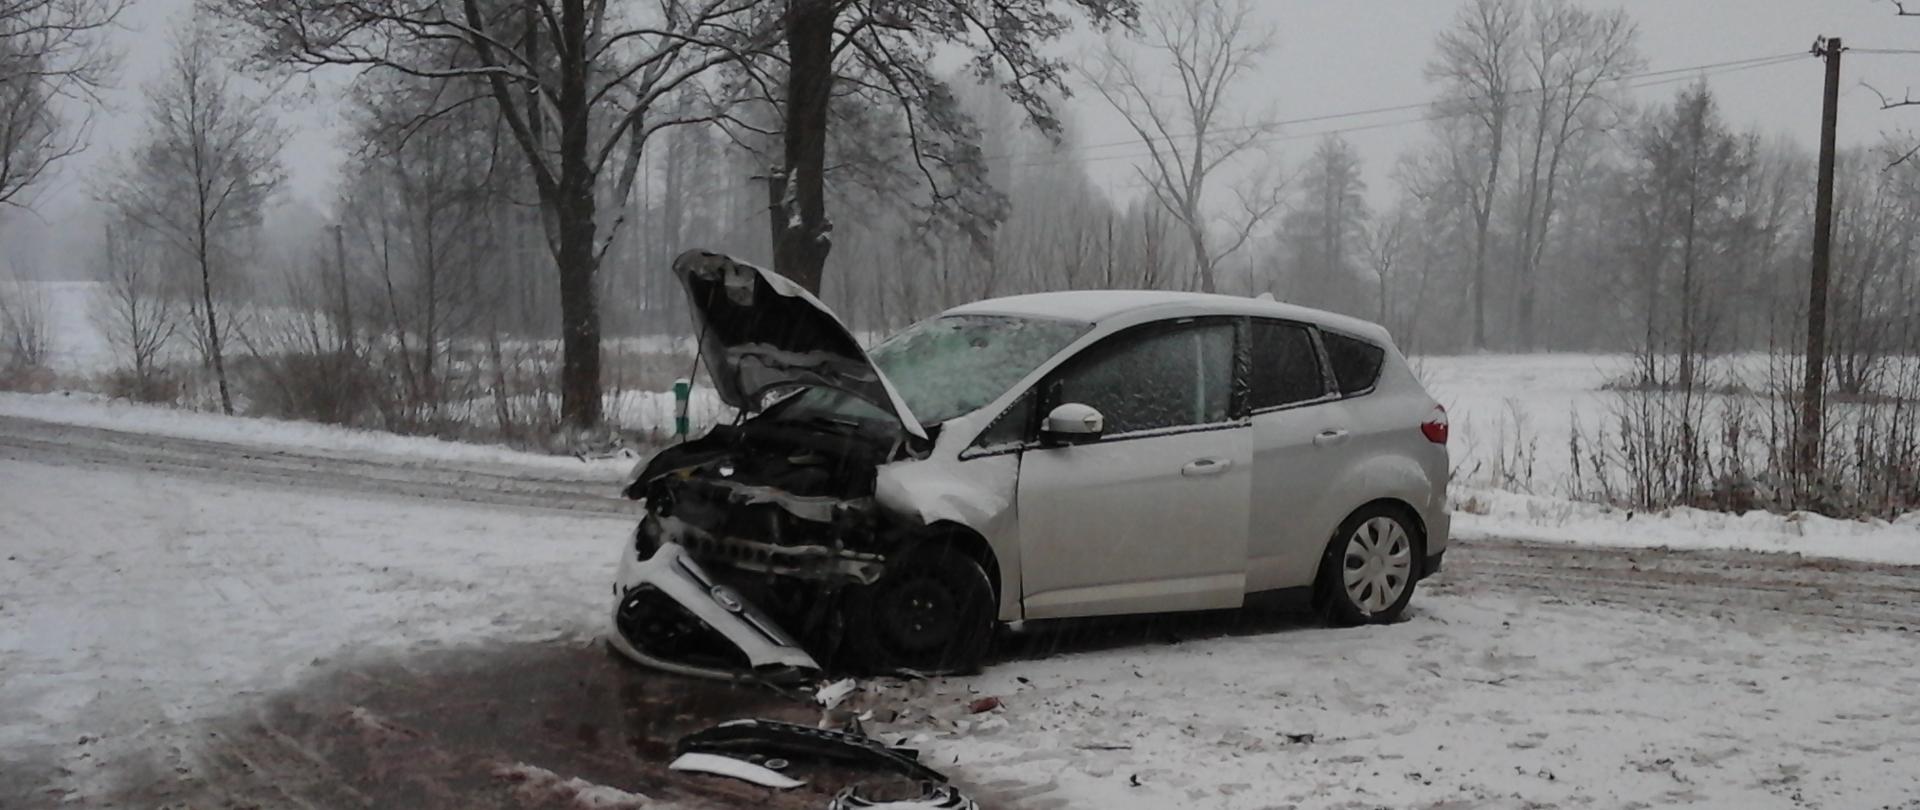 Uszkodzony srebrny samochód osobowy marki Ford stojący na zaśnieżonej drodze. Pojazd ma uszkodzony przód - zerwany zderzak, zniszczony pas przedni, podniesiona pogięta klapa przedniej maski. Przed pojazdem połamane elementy karoserii. Widok pojazdu od strony pasażera.